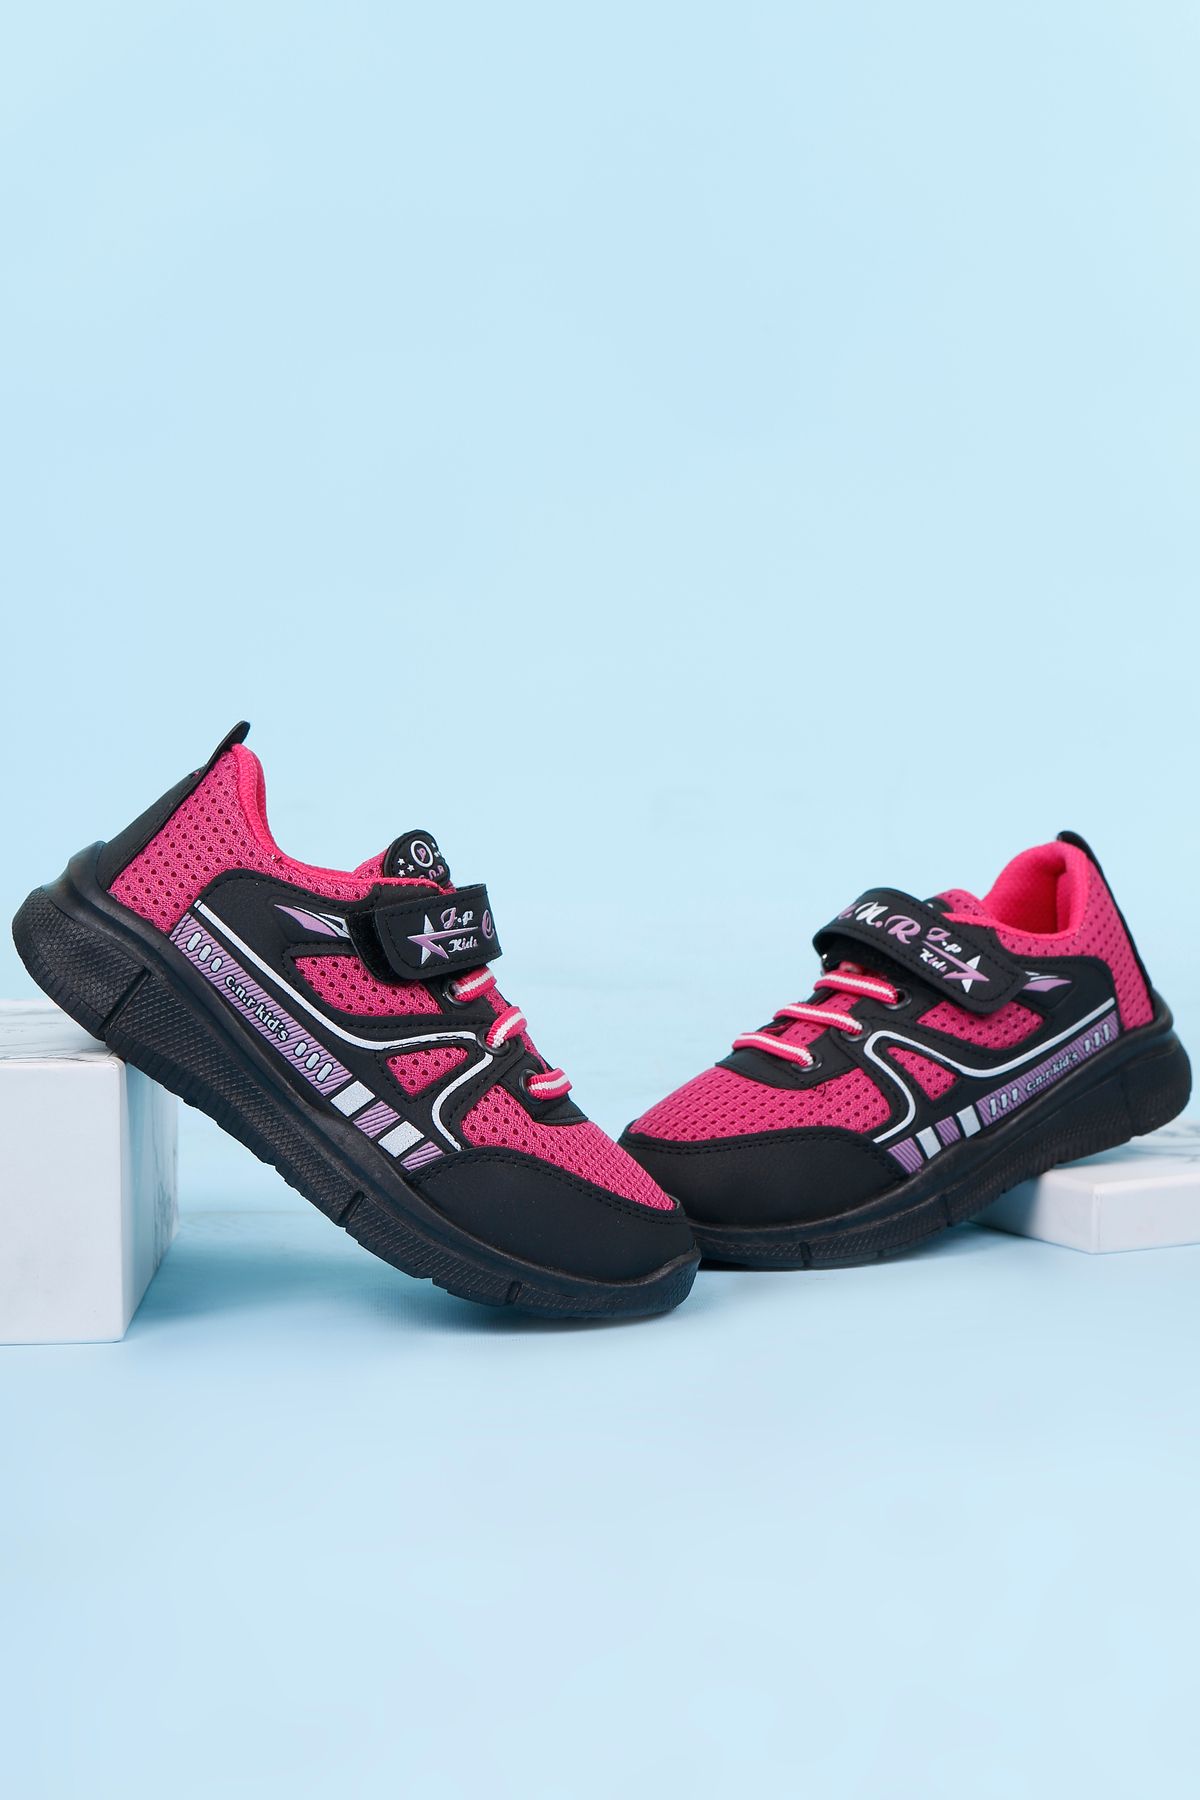 lord's ayakkabı Unisex Siyah-Pembe Çocuk Spor Ayakkabı Sneakers Ayakkabısı